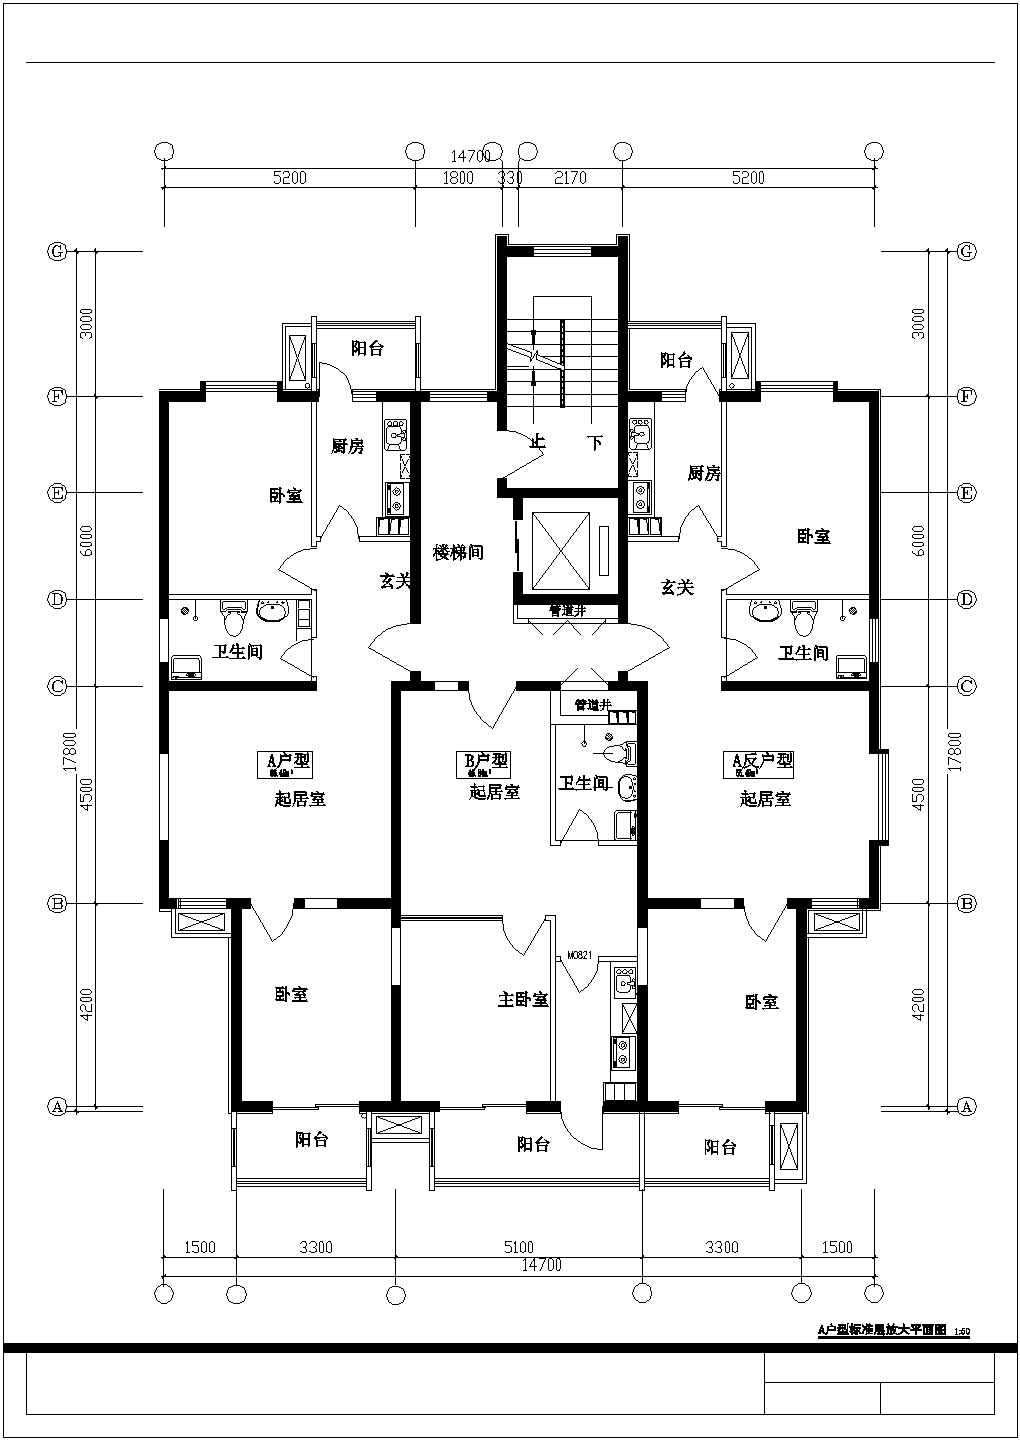 179平方米小高层带电梯一梯三户住宅户型设计cad图(含效果图)